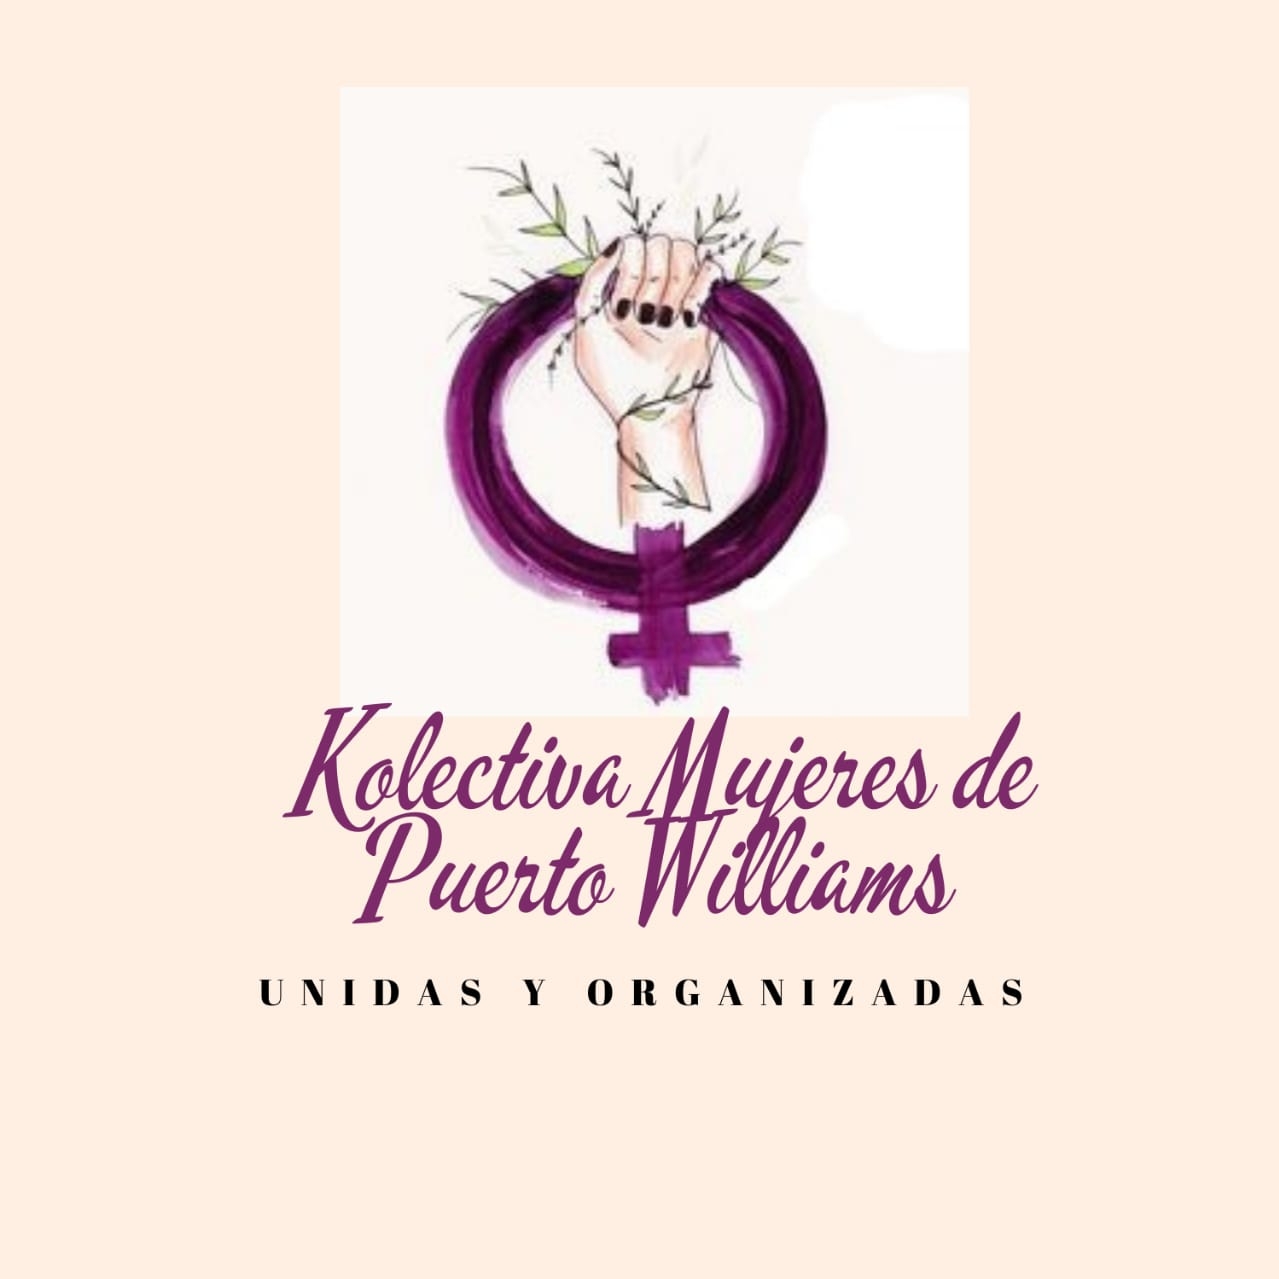 Kolectiva de Mujeres Puerto Williams